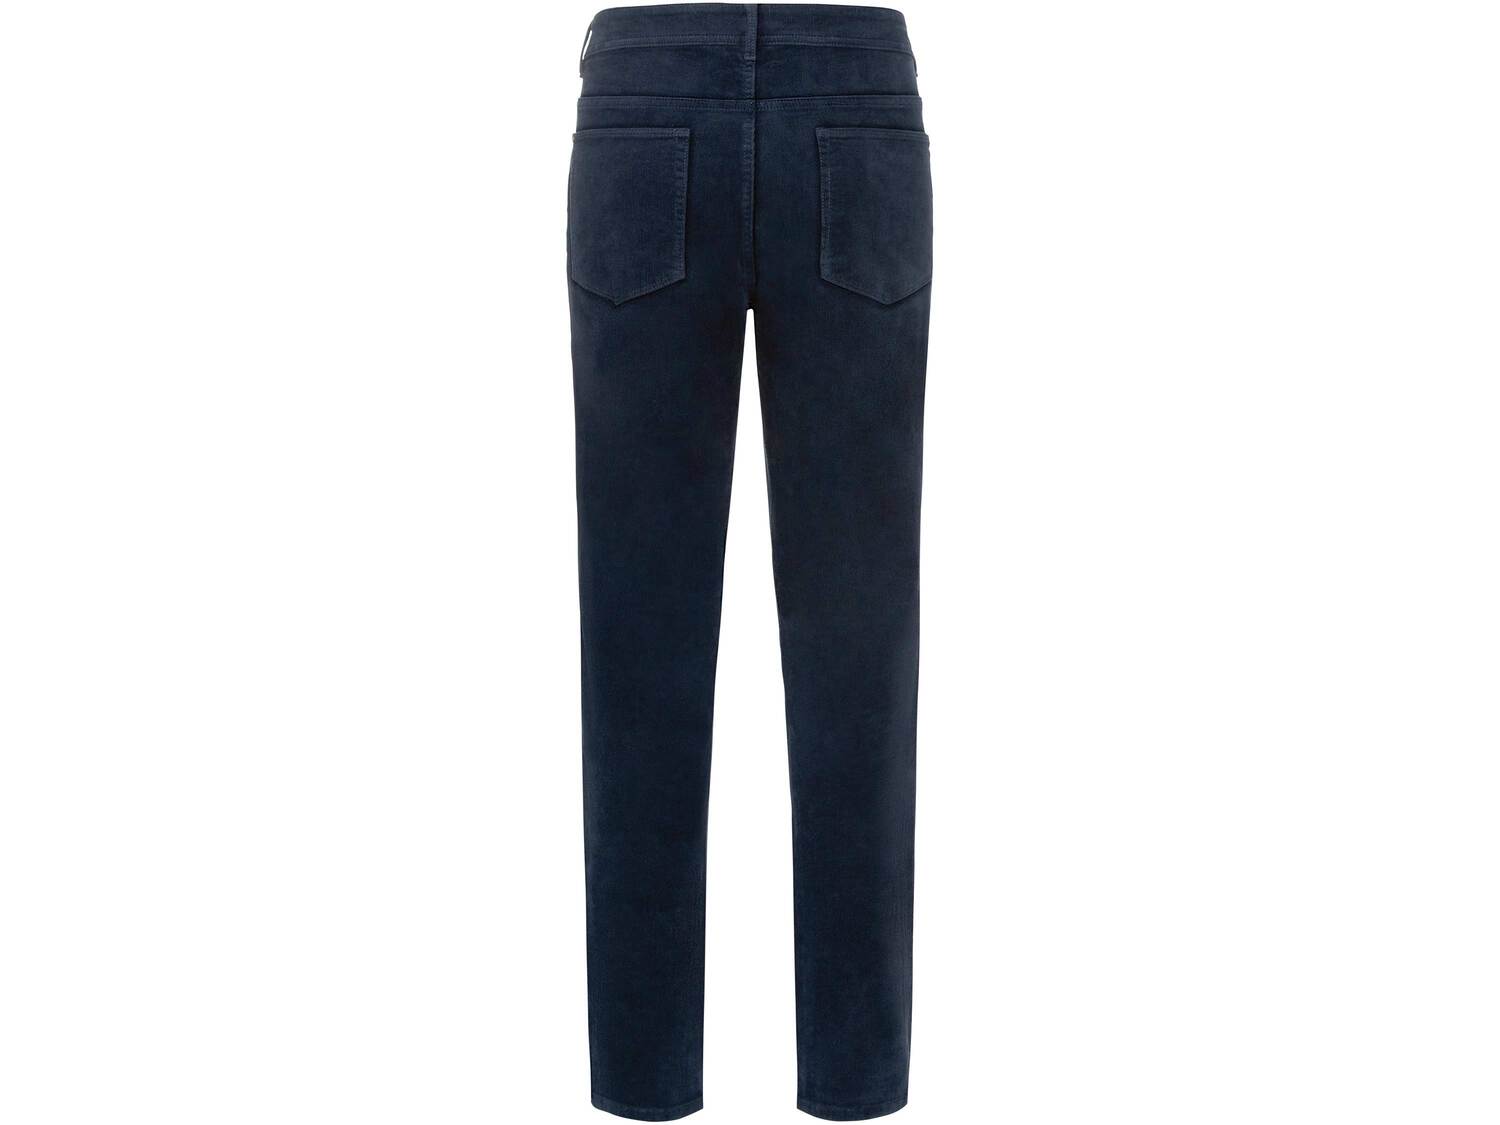 Spodnie sztruksowe męskie Livergy, cena 39,99 PLN 
- rozmiary: 48-56
- 99% bawełny, ...